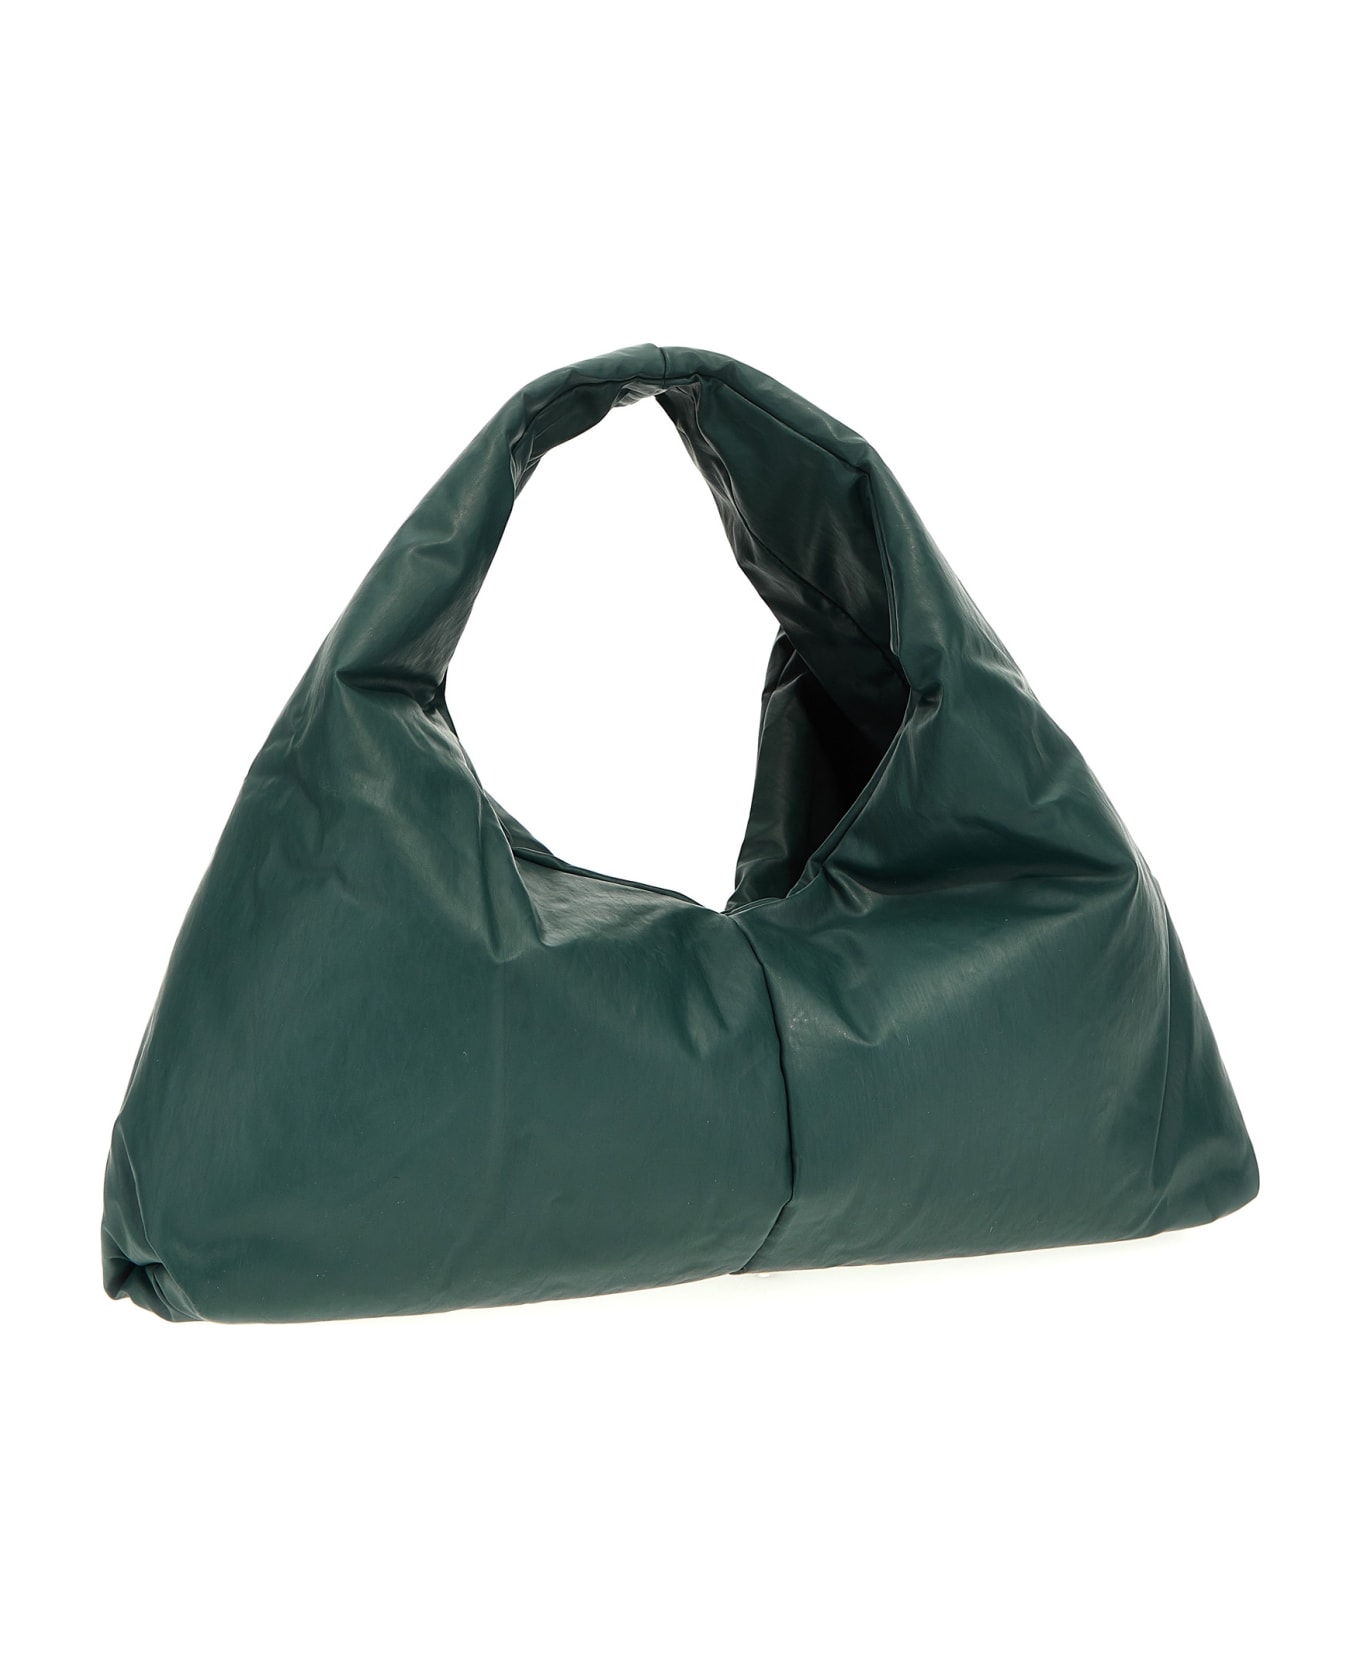 KASSL Editions 'anchor Small' Handbag - Green